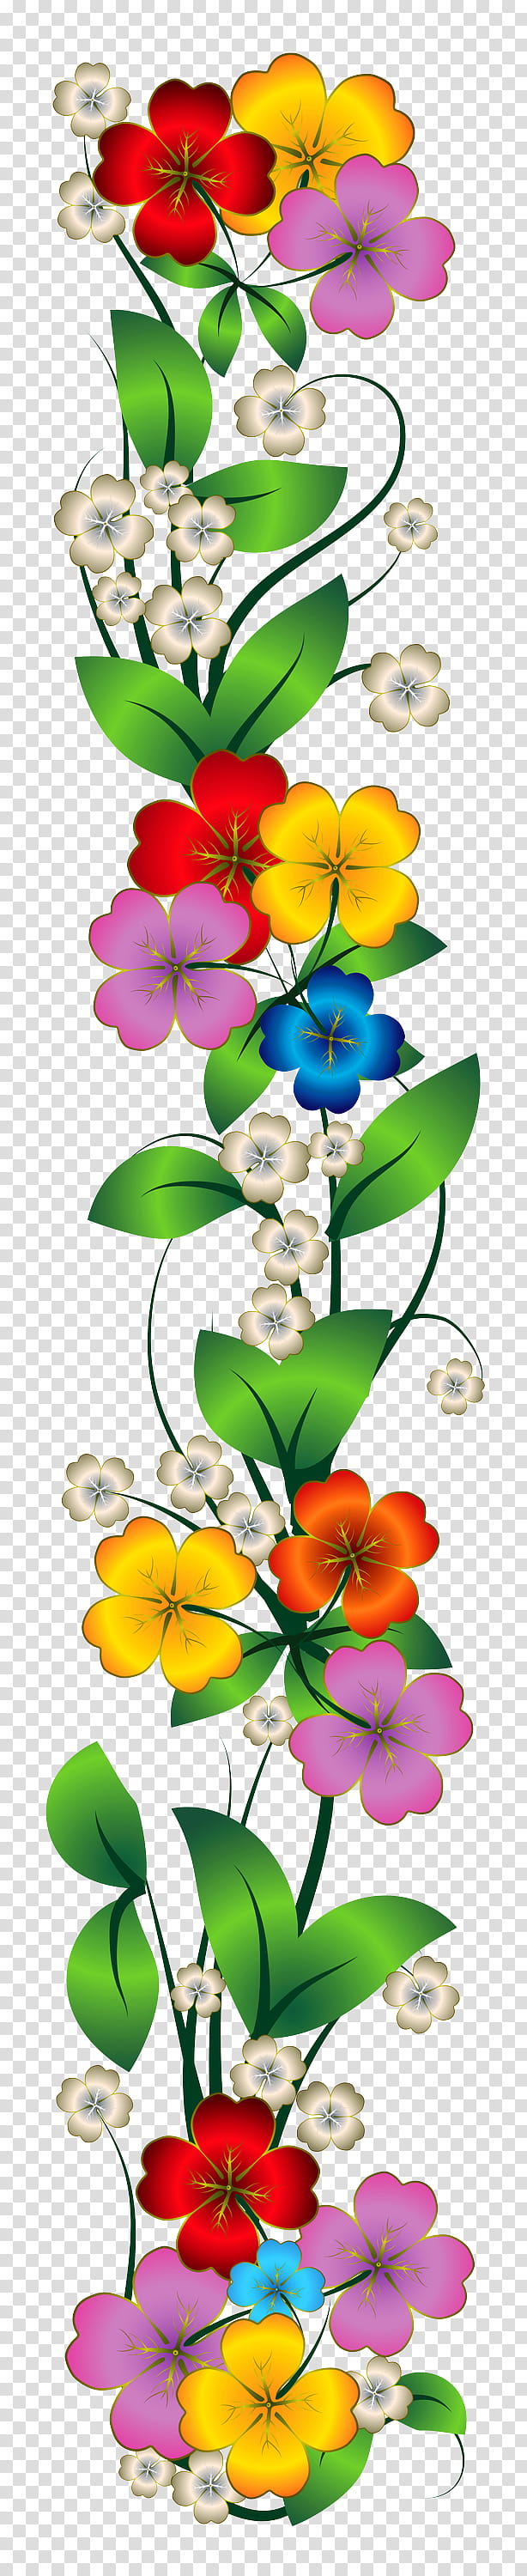 flower petal plant flowering plant, Wildflower, Cut Flowers, Bouquet, Moth Orchid transparent background PNG clipart